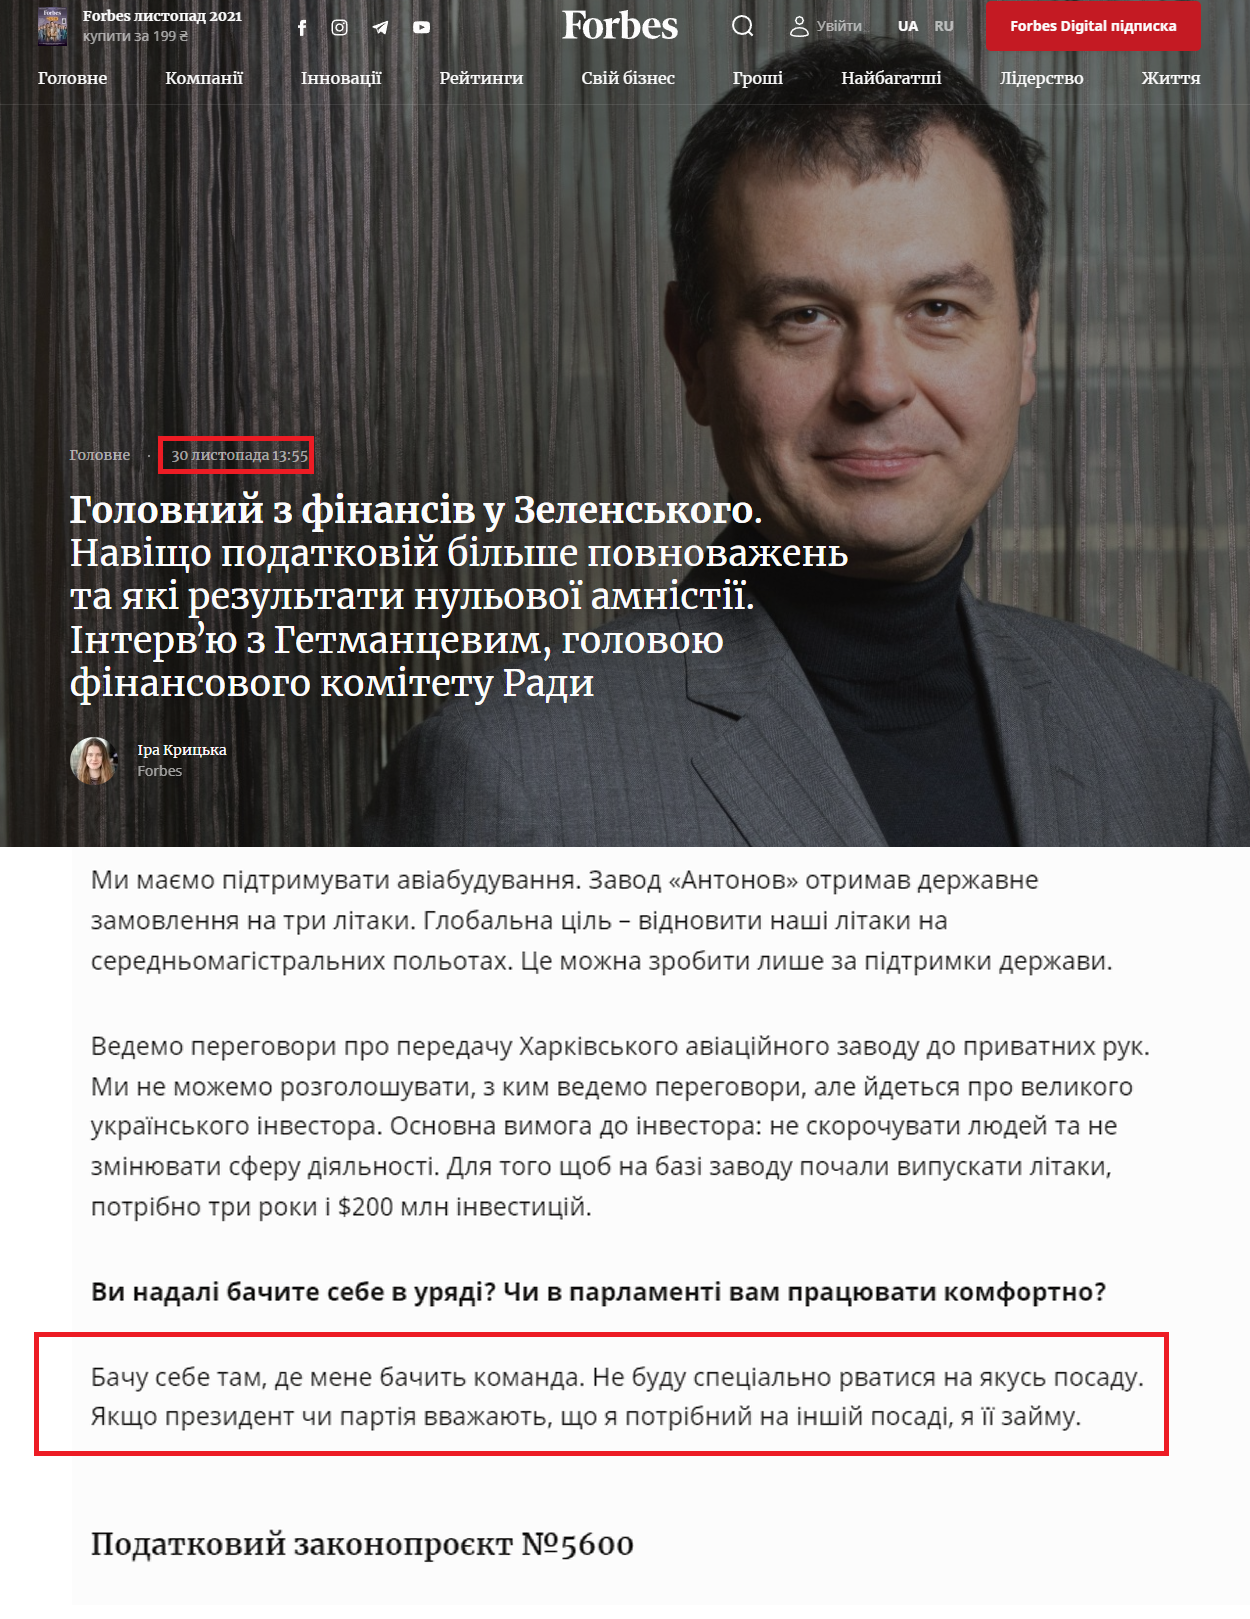 https://forbes.ua/news/zachem-nalogovoy-bolshe-polnomochiy-i-kakie-rezultaty-nulevoy-amnistii-intervyu-s-daniilom-getmantsevym-glavnym-30112021-2855